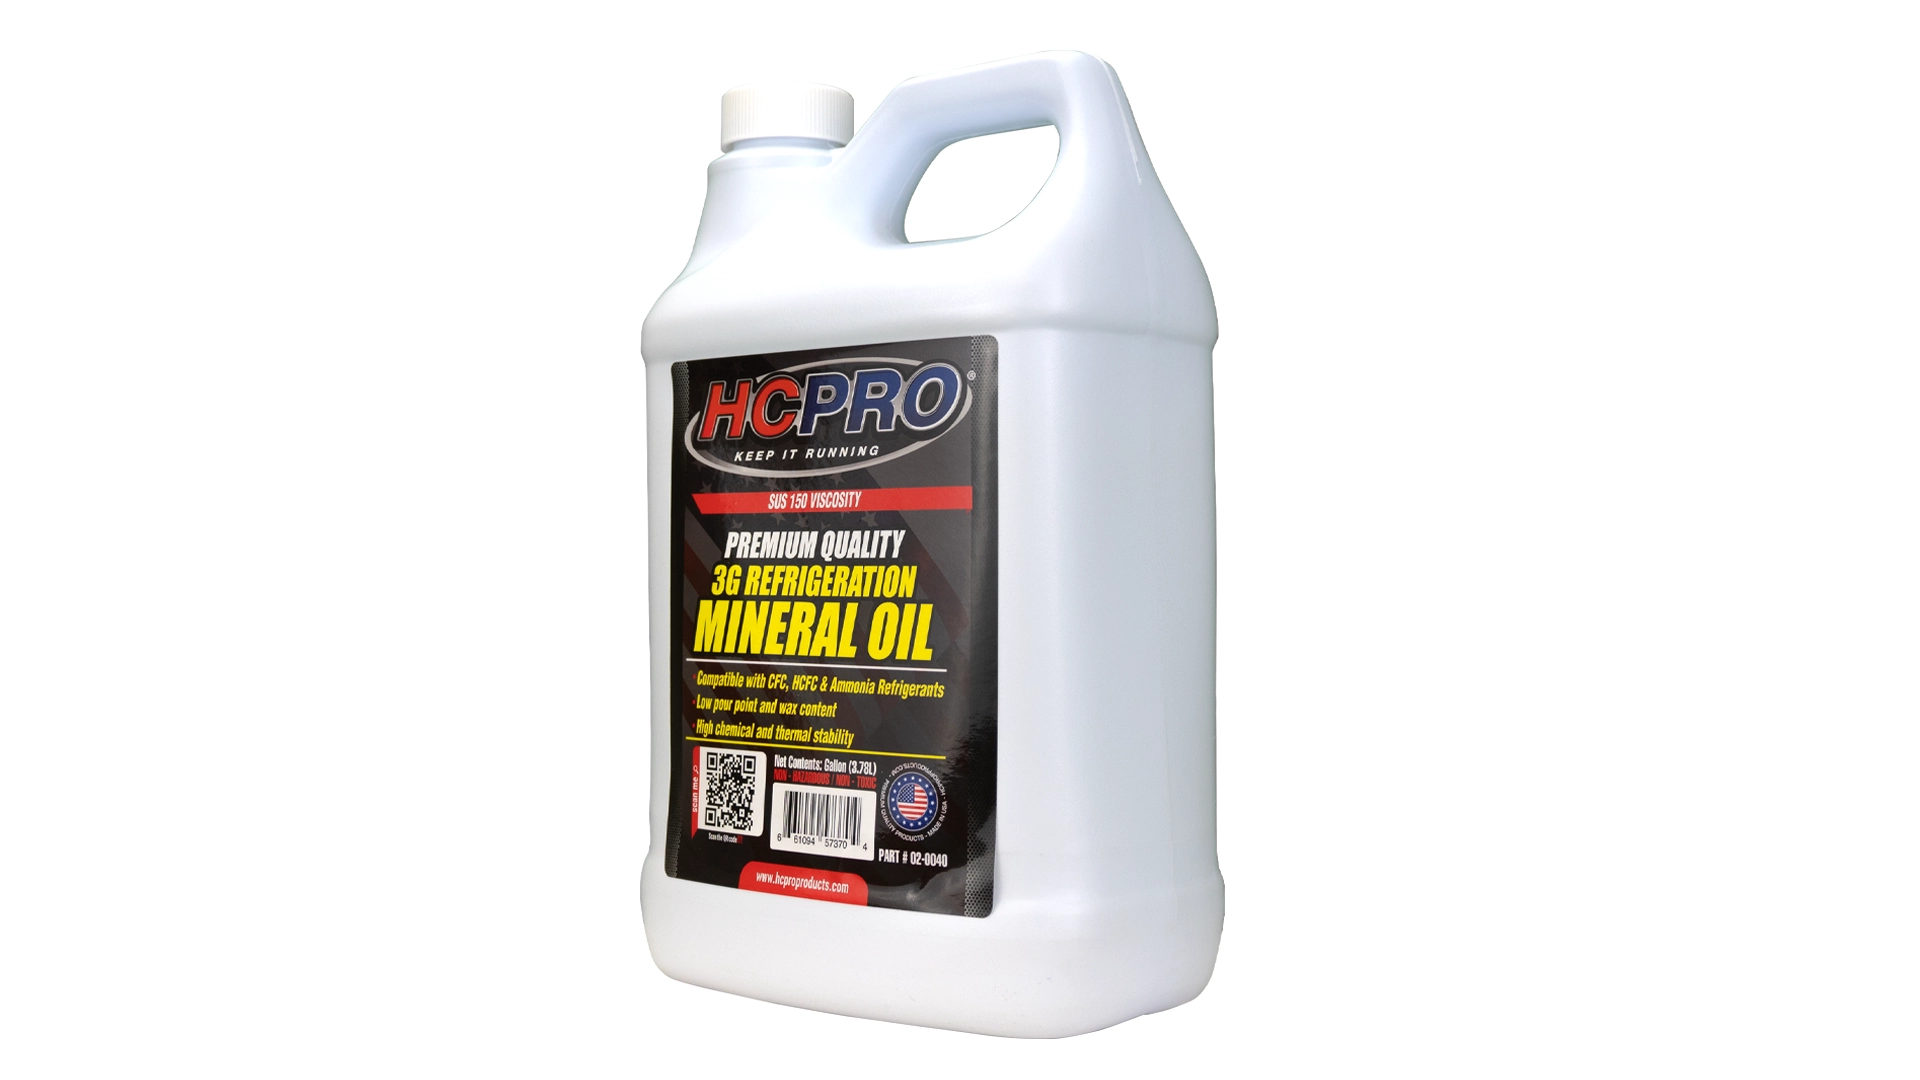 Food Grade Mineral Oil (Machine Oil) 1 gallon | mysite